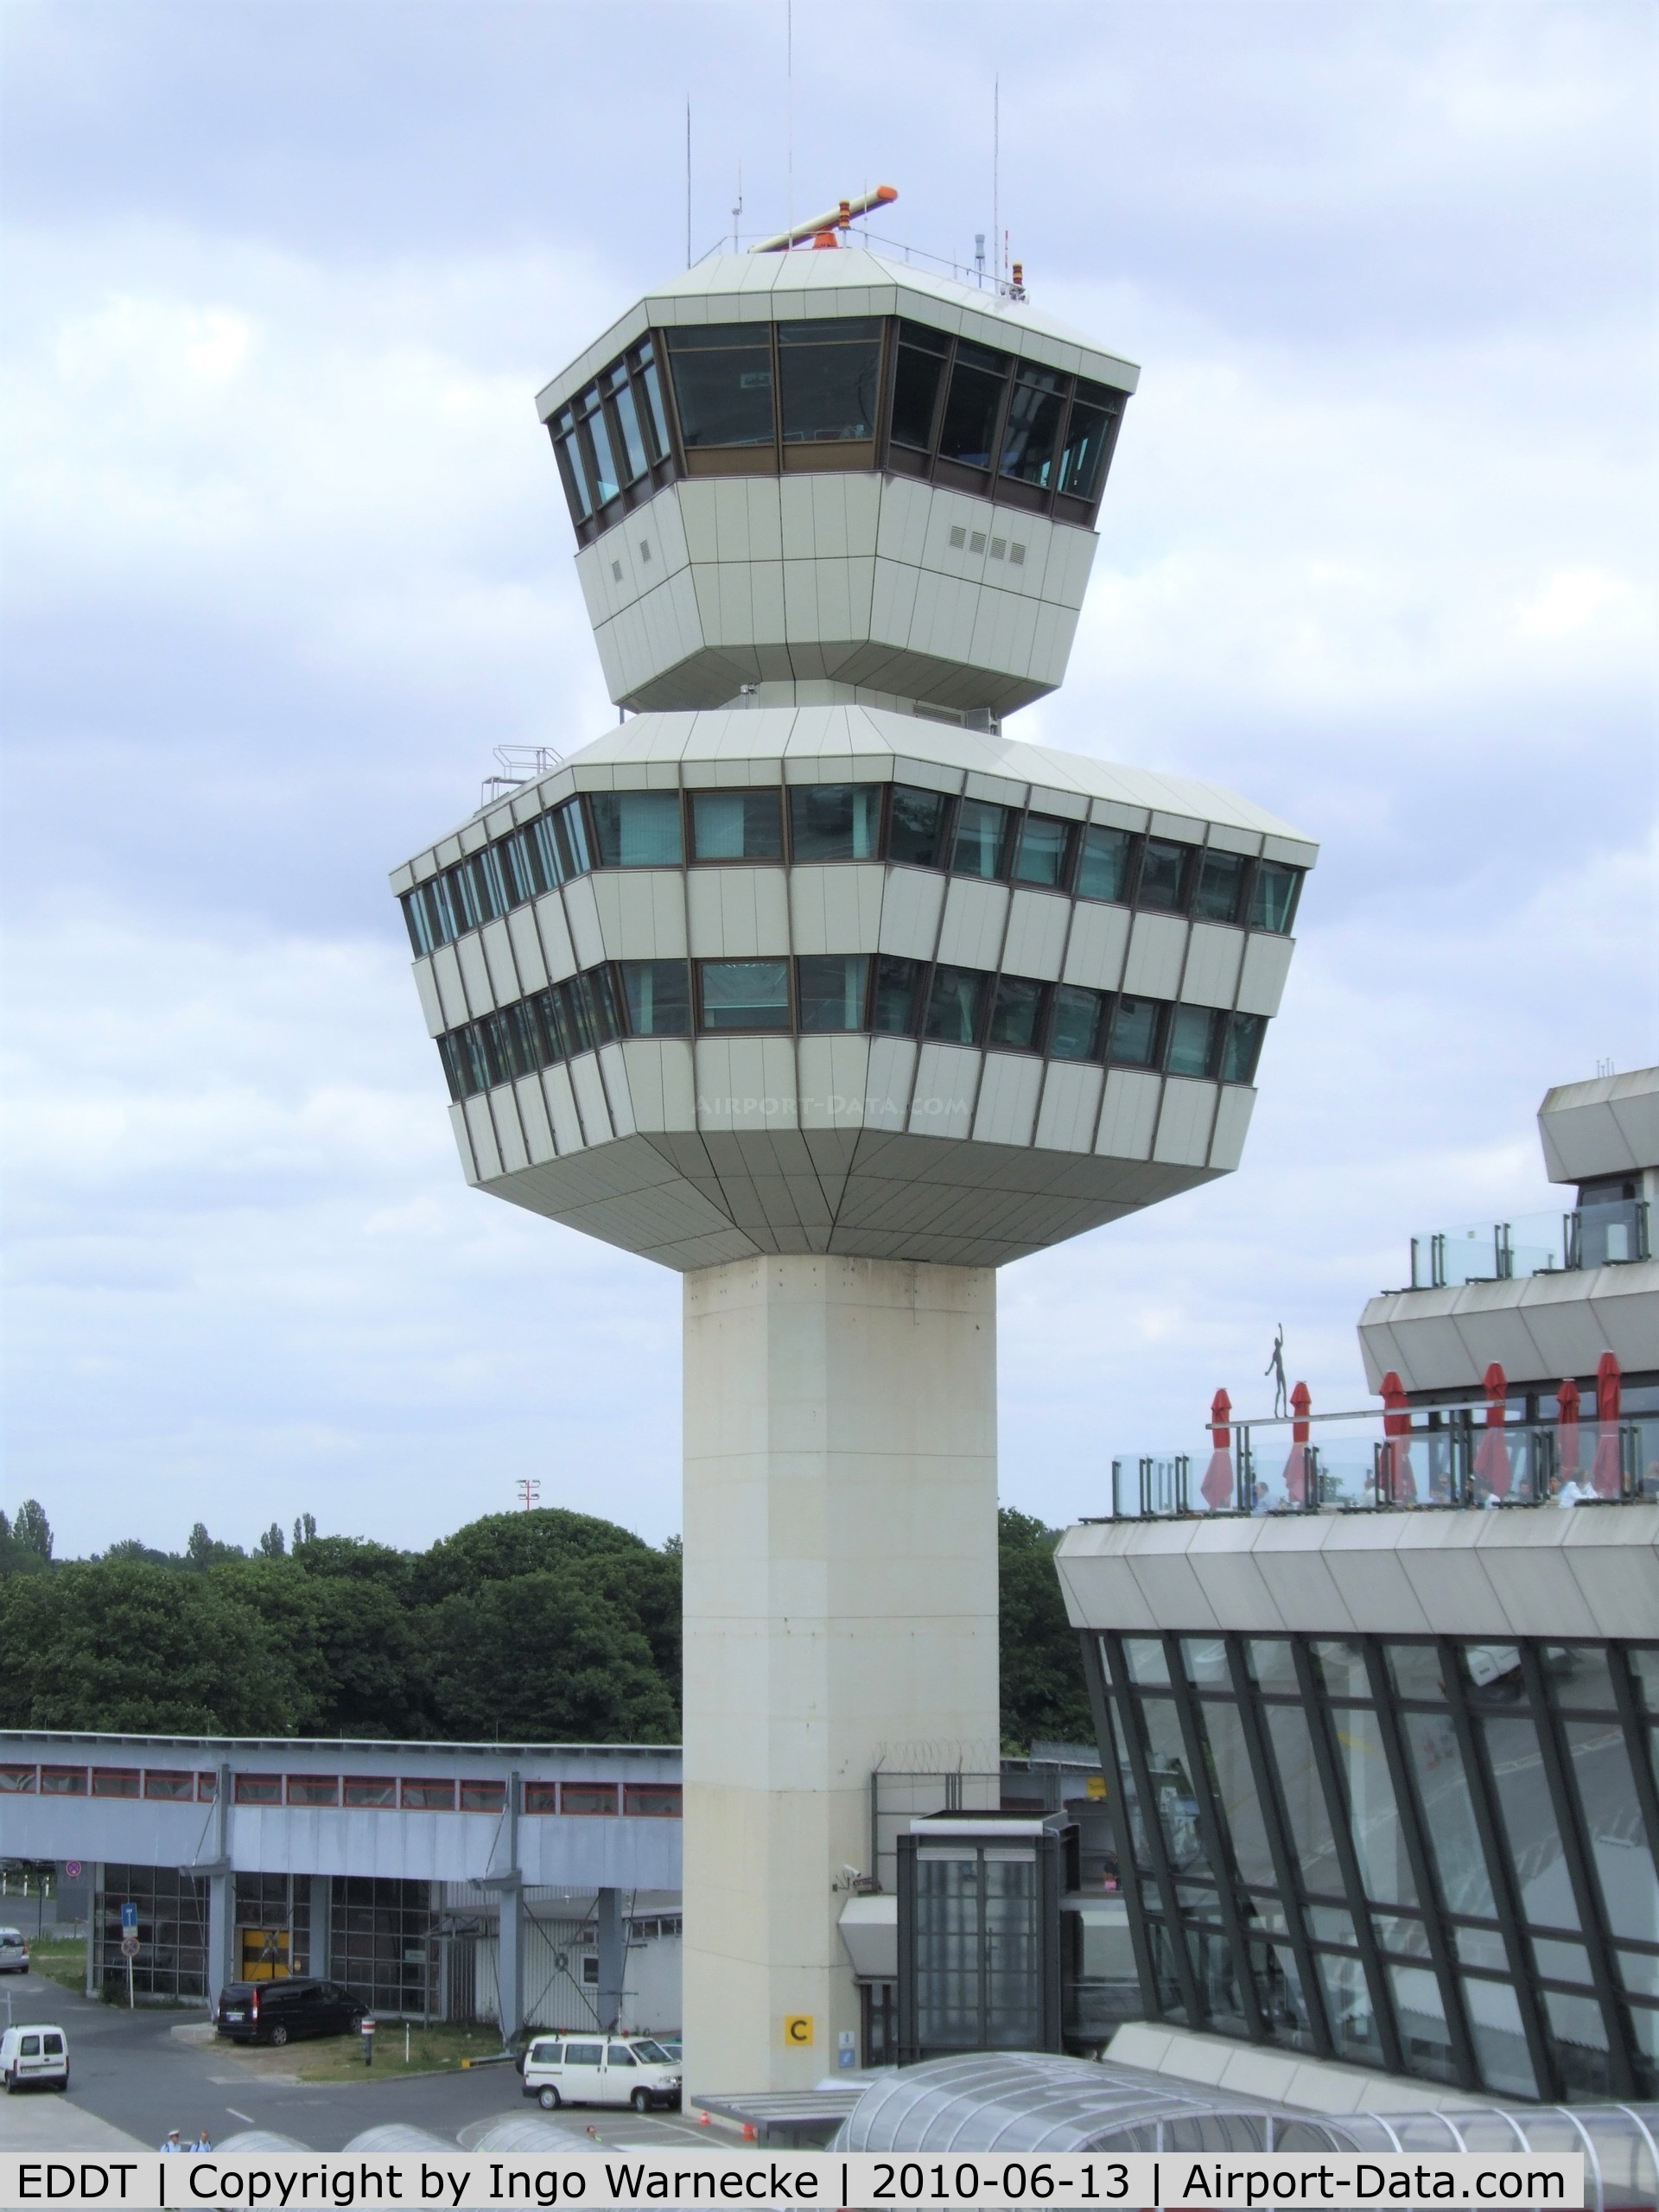 Tegel International Airport (closing in 2011), Berlin Germany (EDDT) - airside view of tower at Berlin Tegel airport